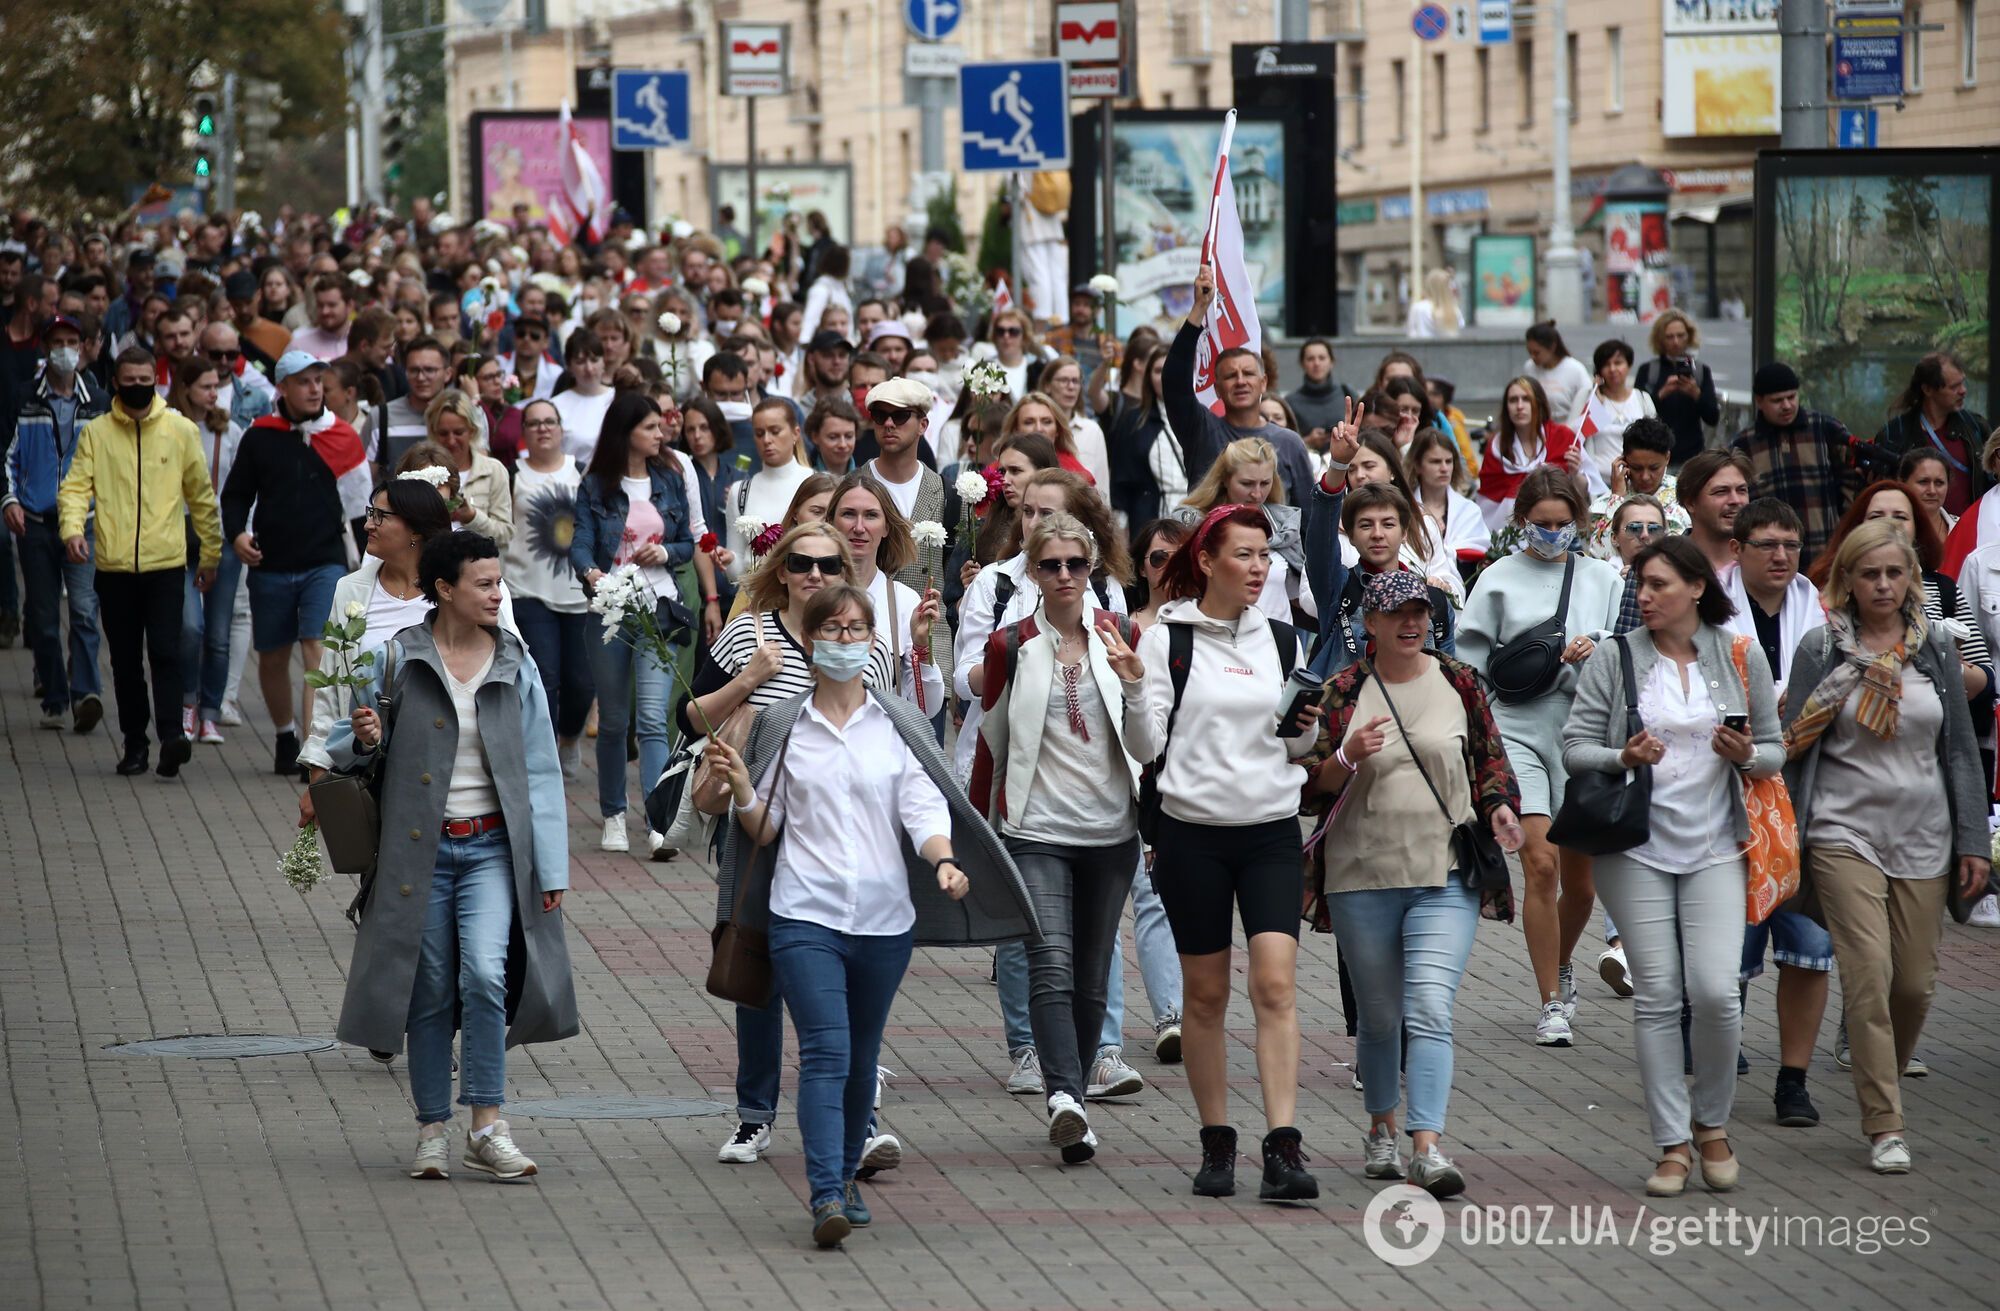 Акция протеста в Минске собрала несколько тысяч человек